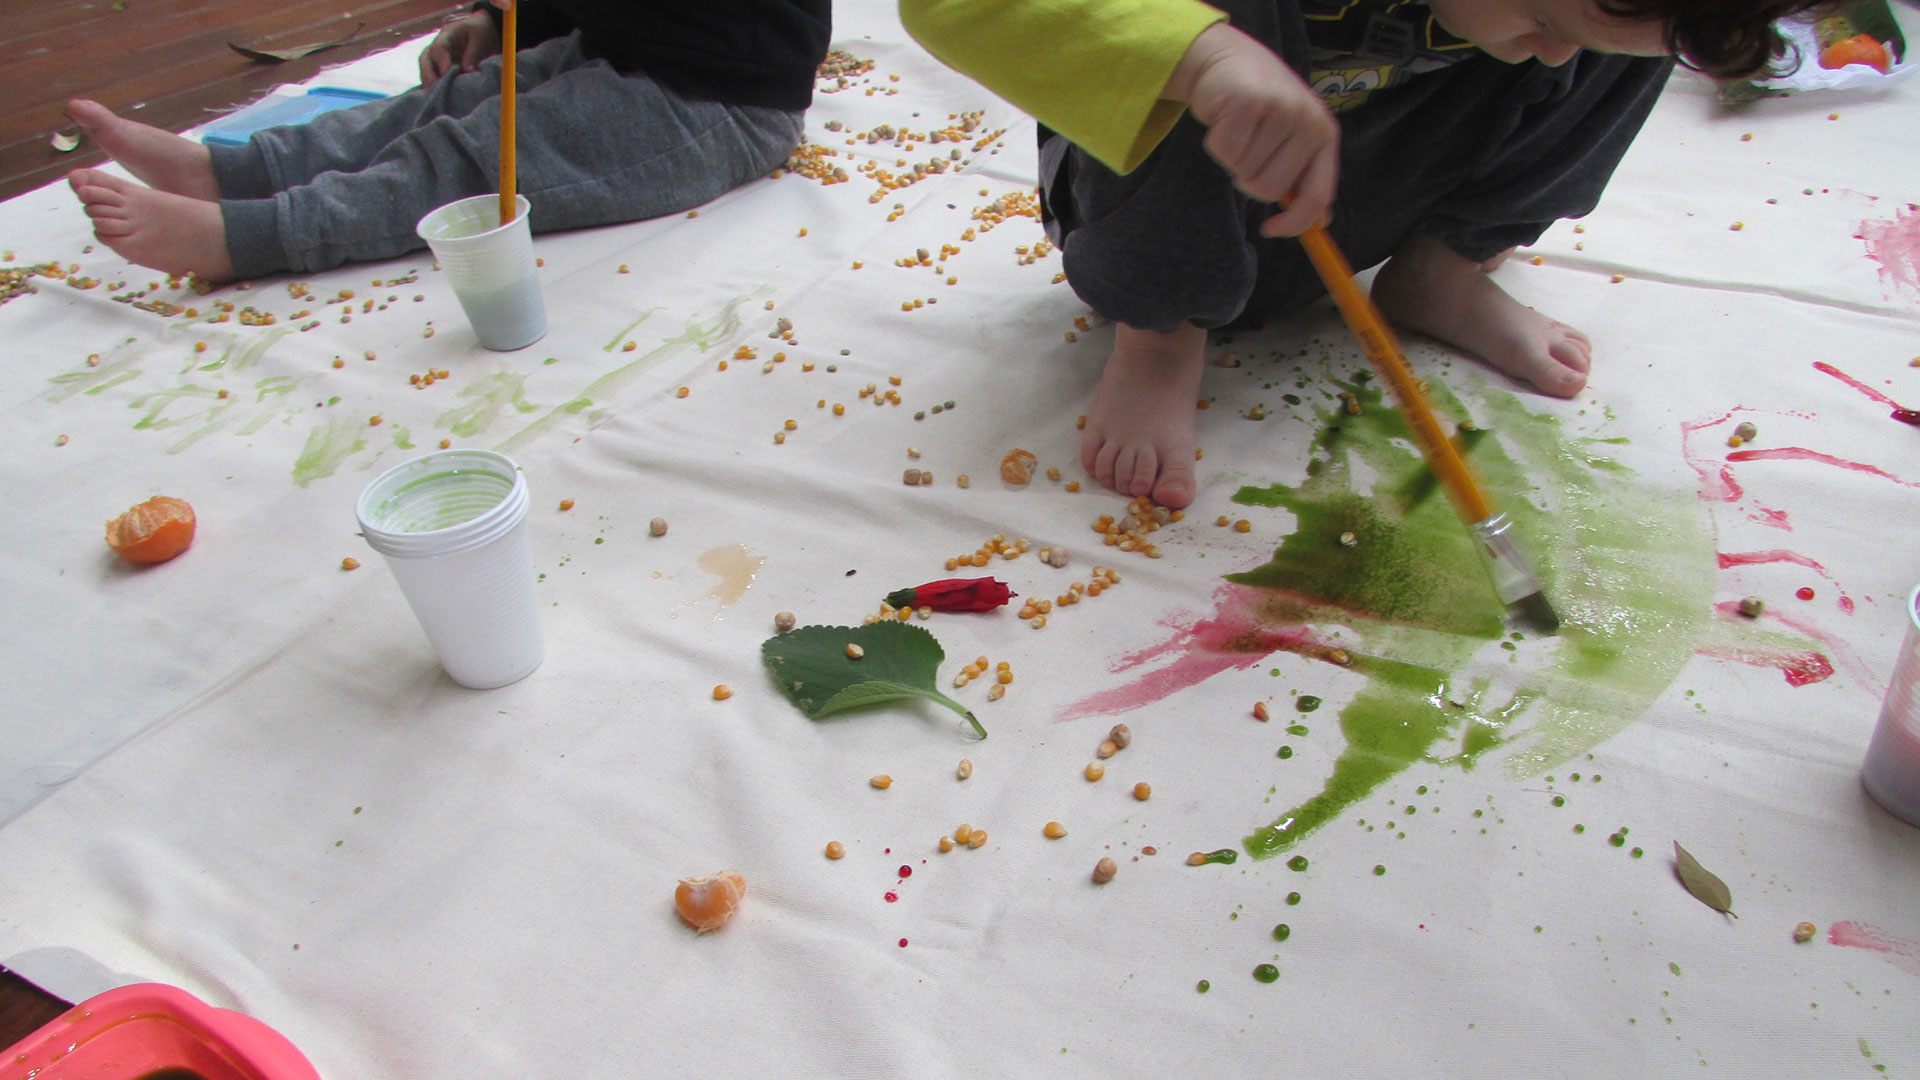 Crianças pintando um painel branco estendido no chão com tintas coloridas e pincéis com aquarelados.